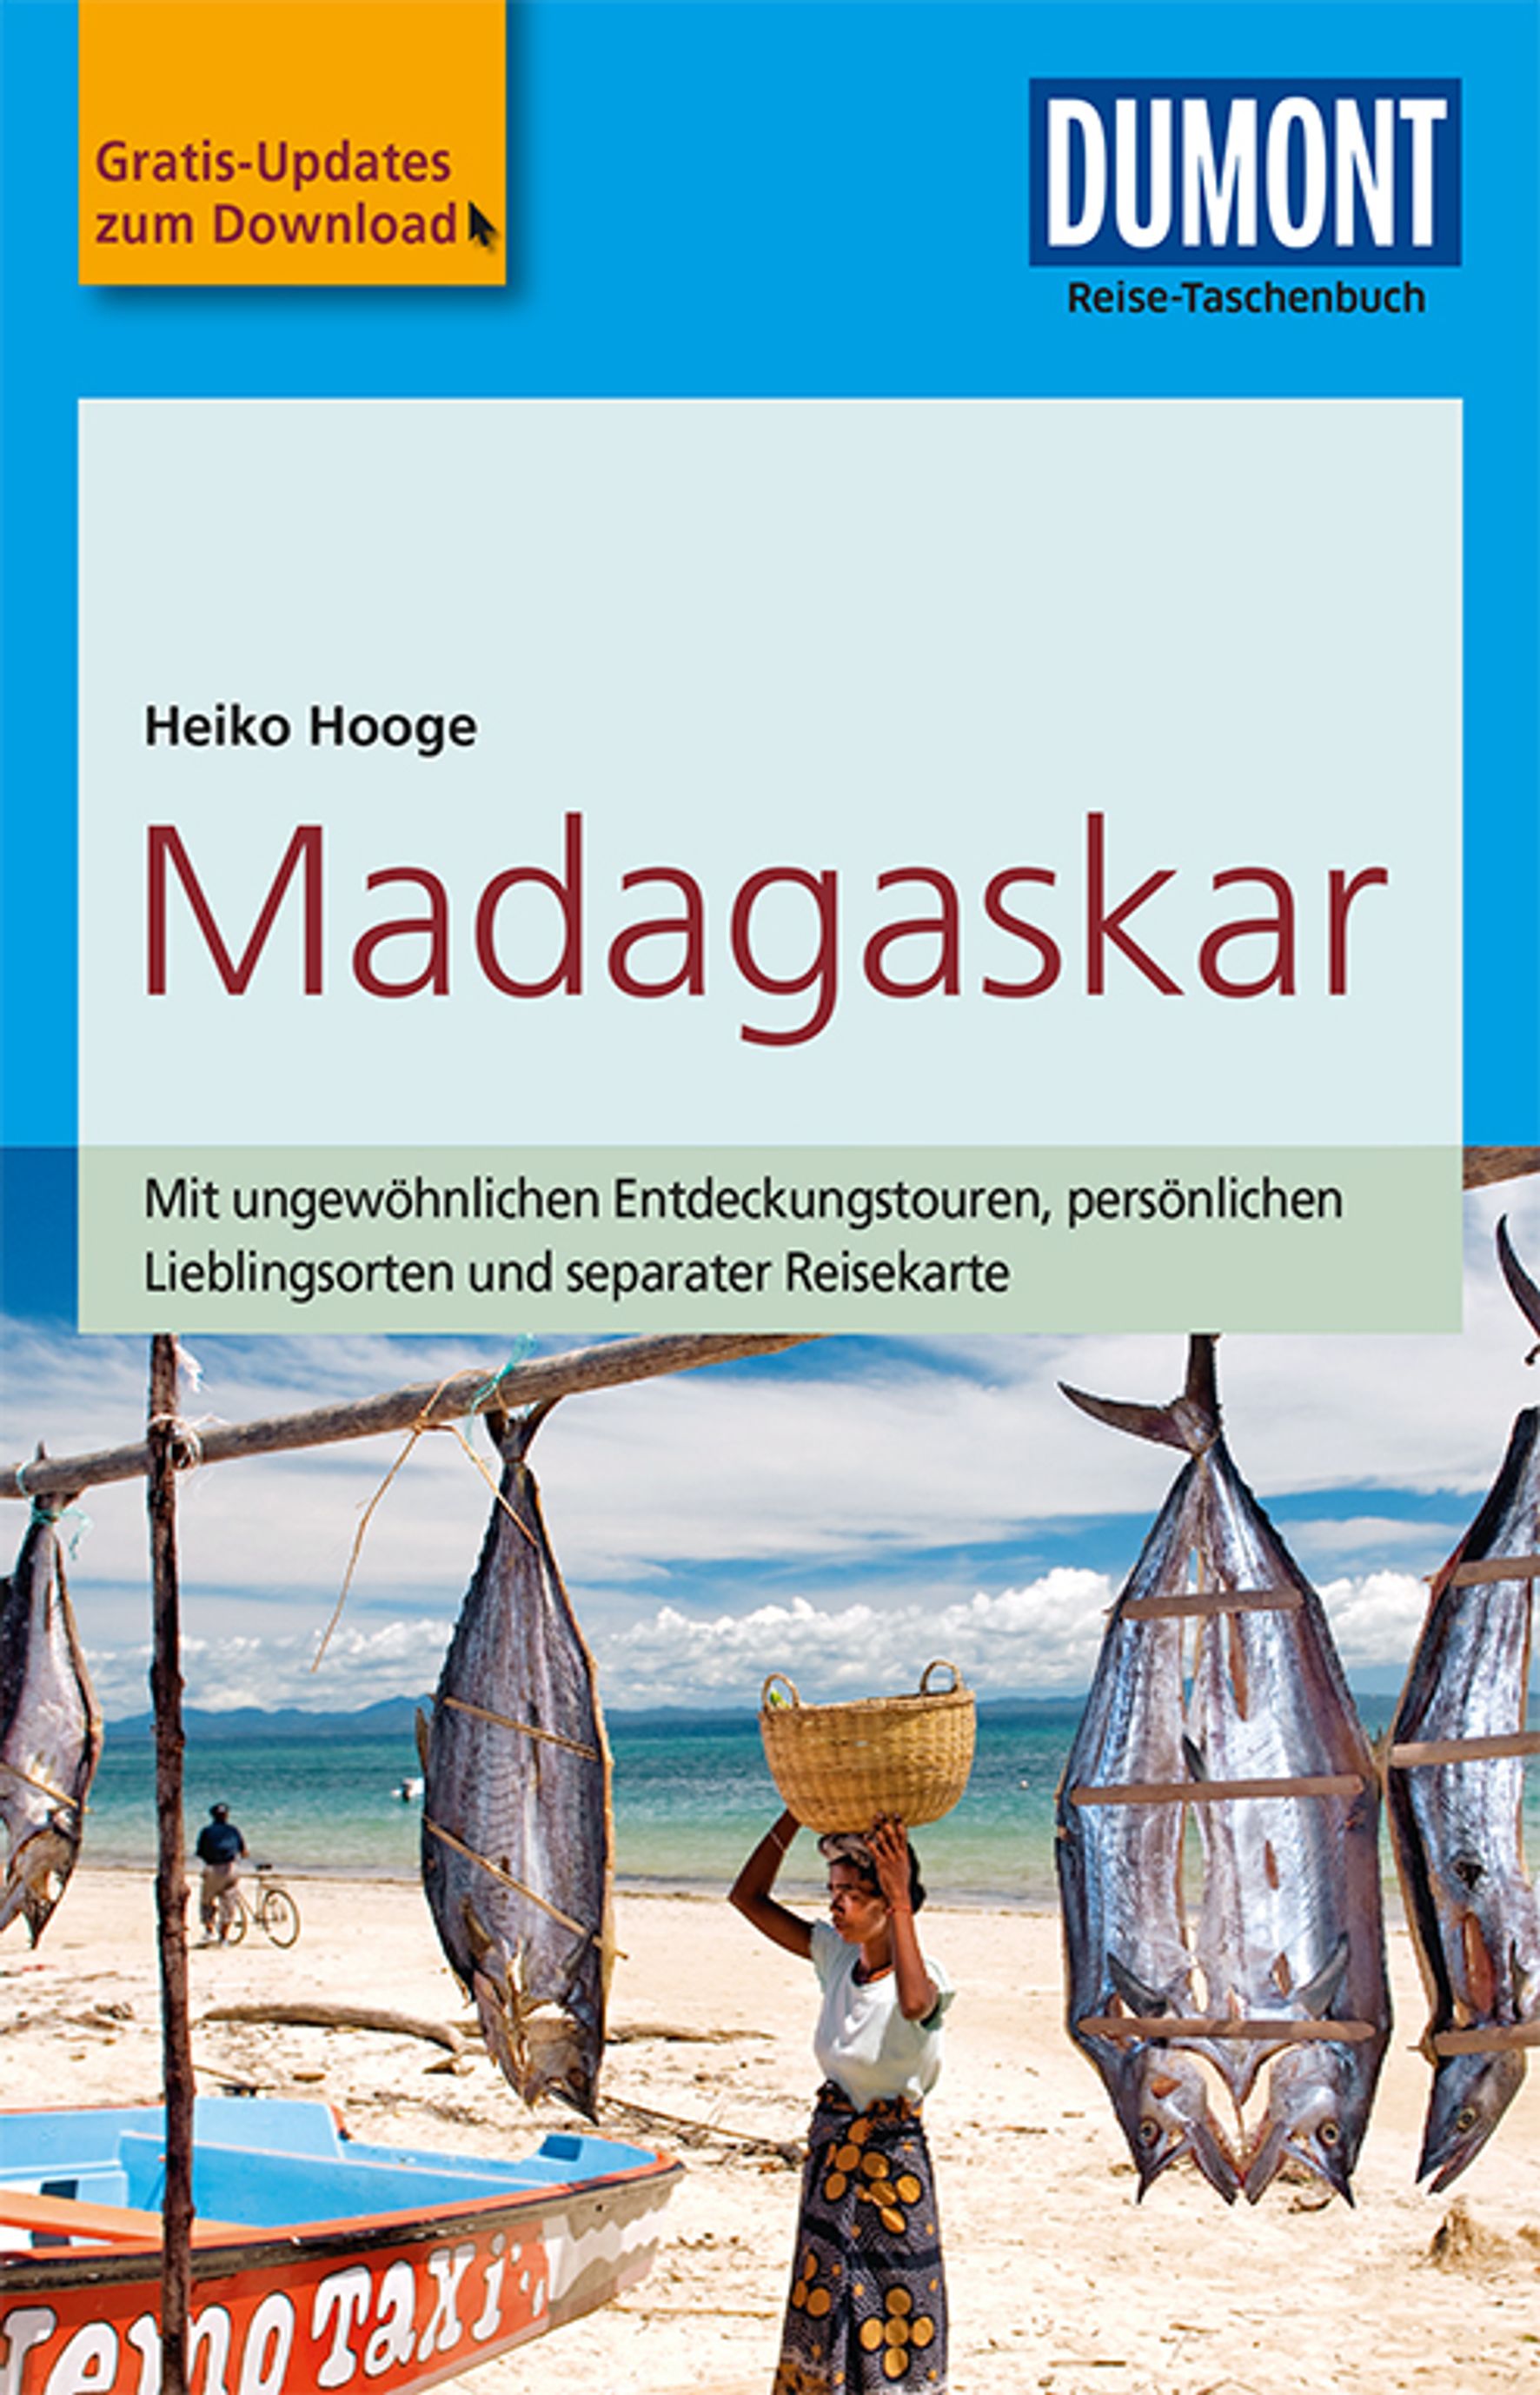 MAIRDUMONT Madagaskar (eBook)